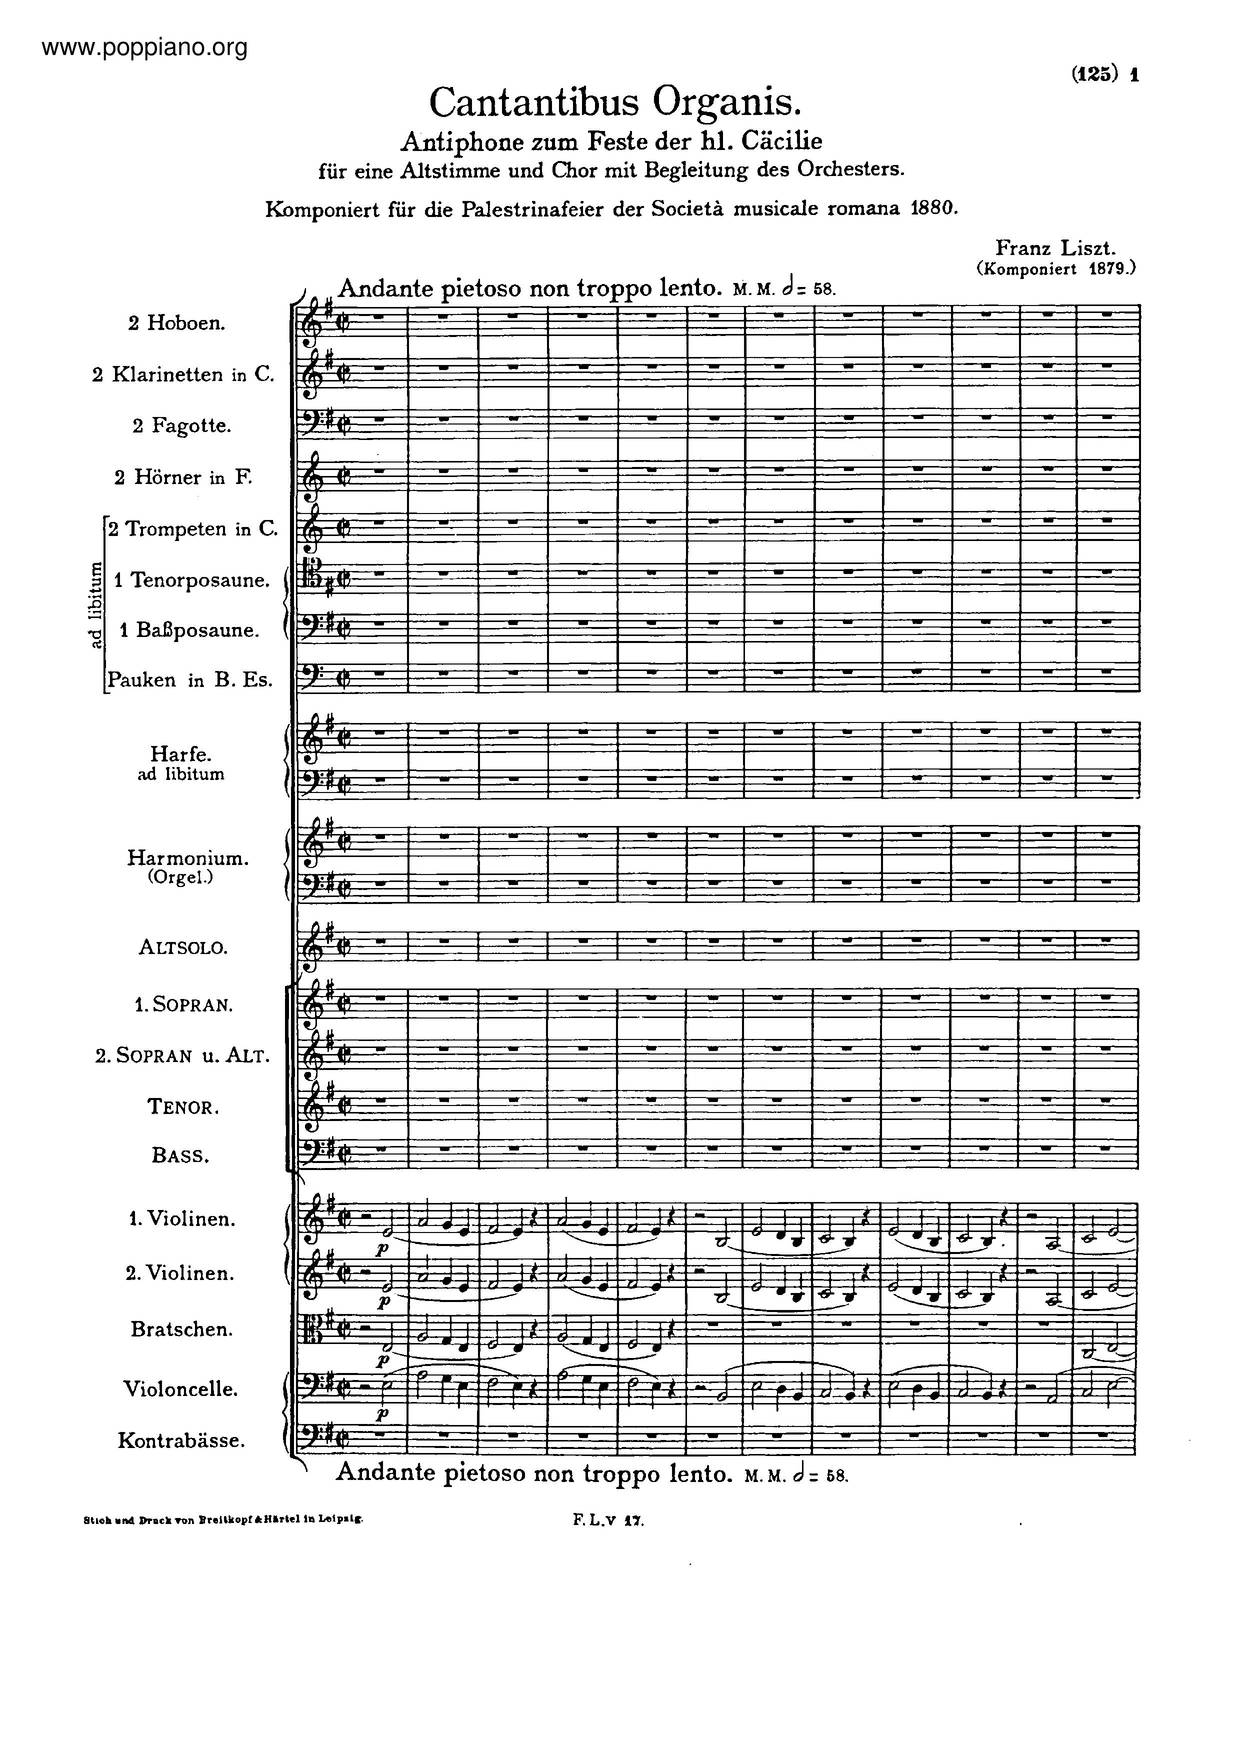 Cantantibus Organis, S.7 Score